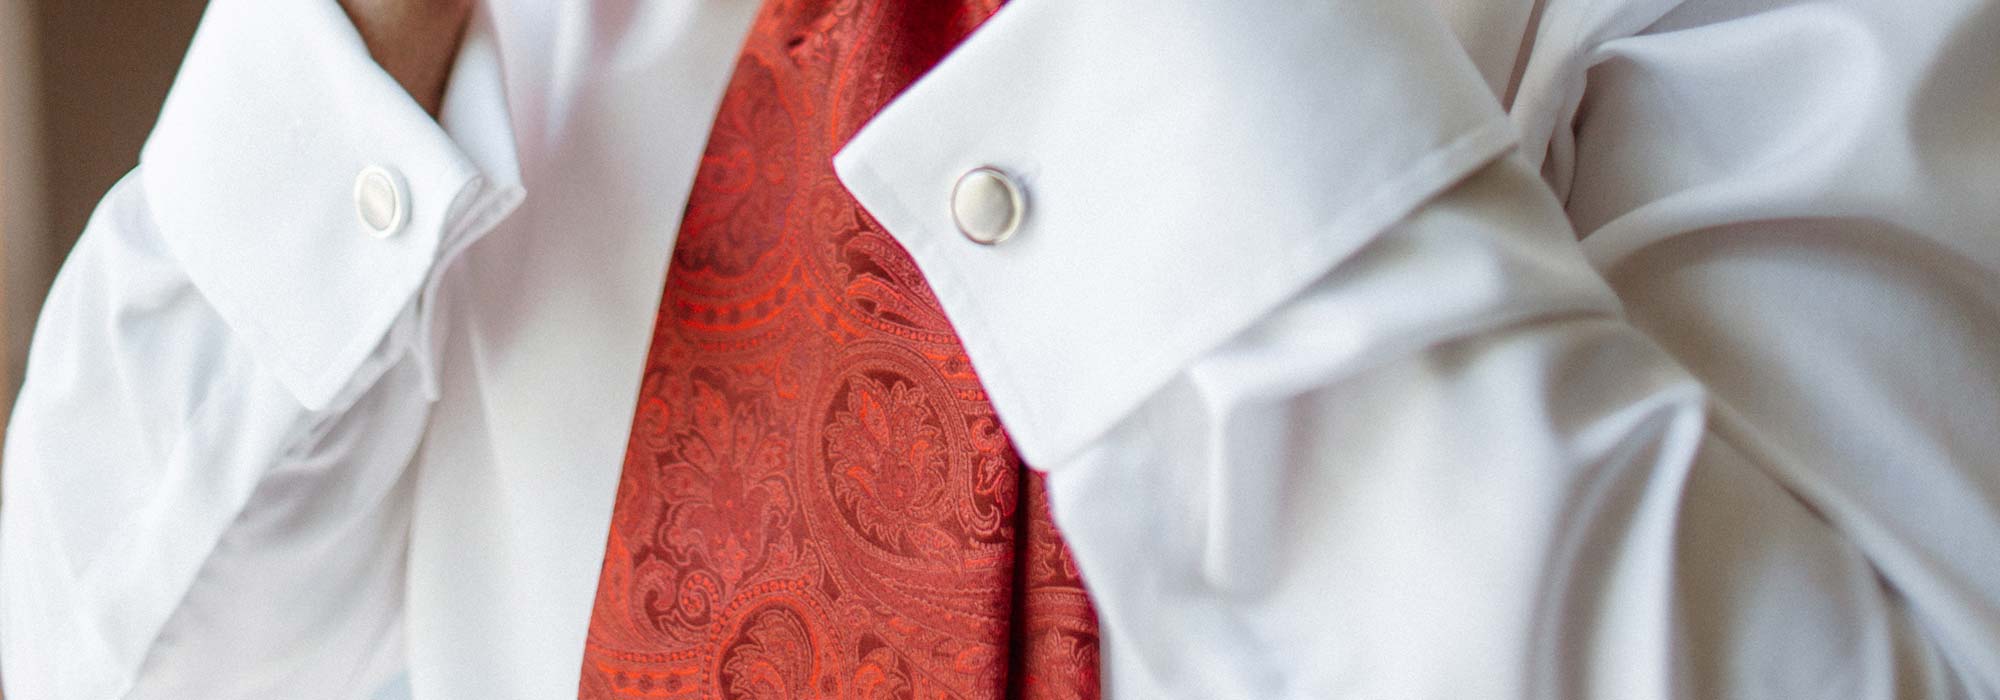 Krawatte zum Hochzeitsanzug